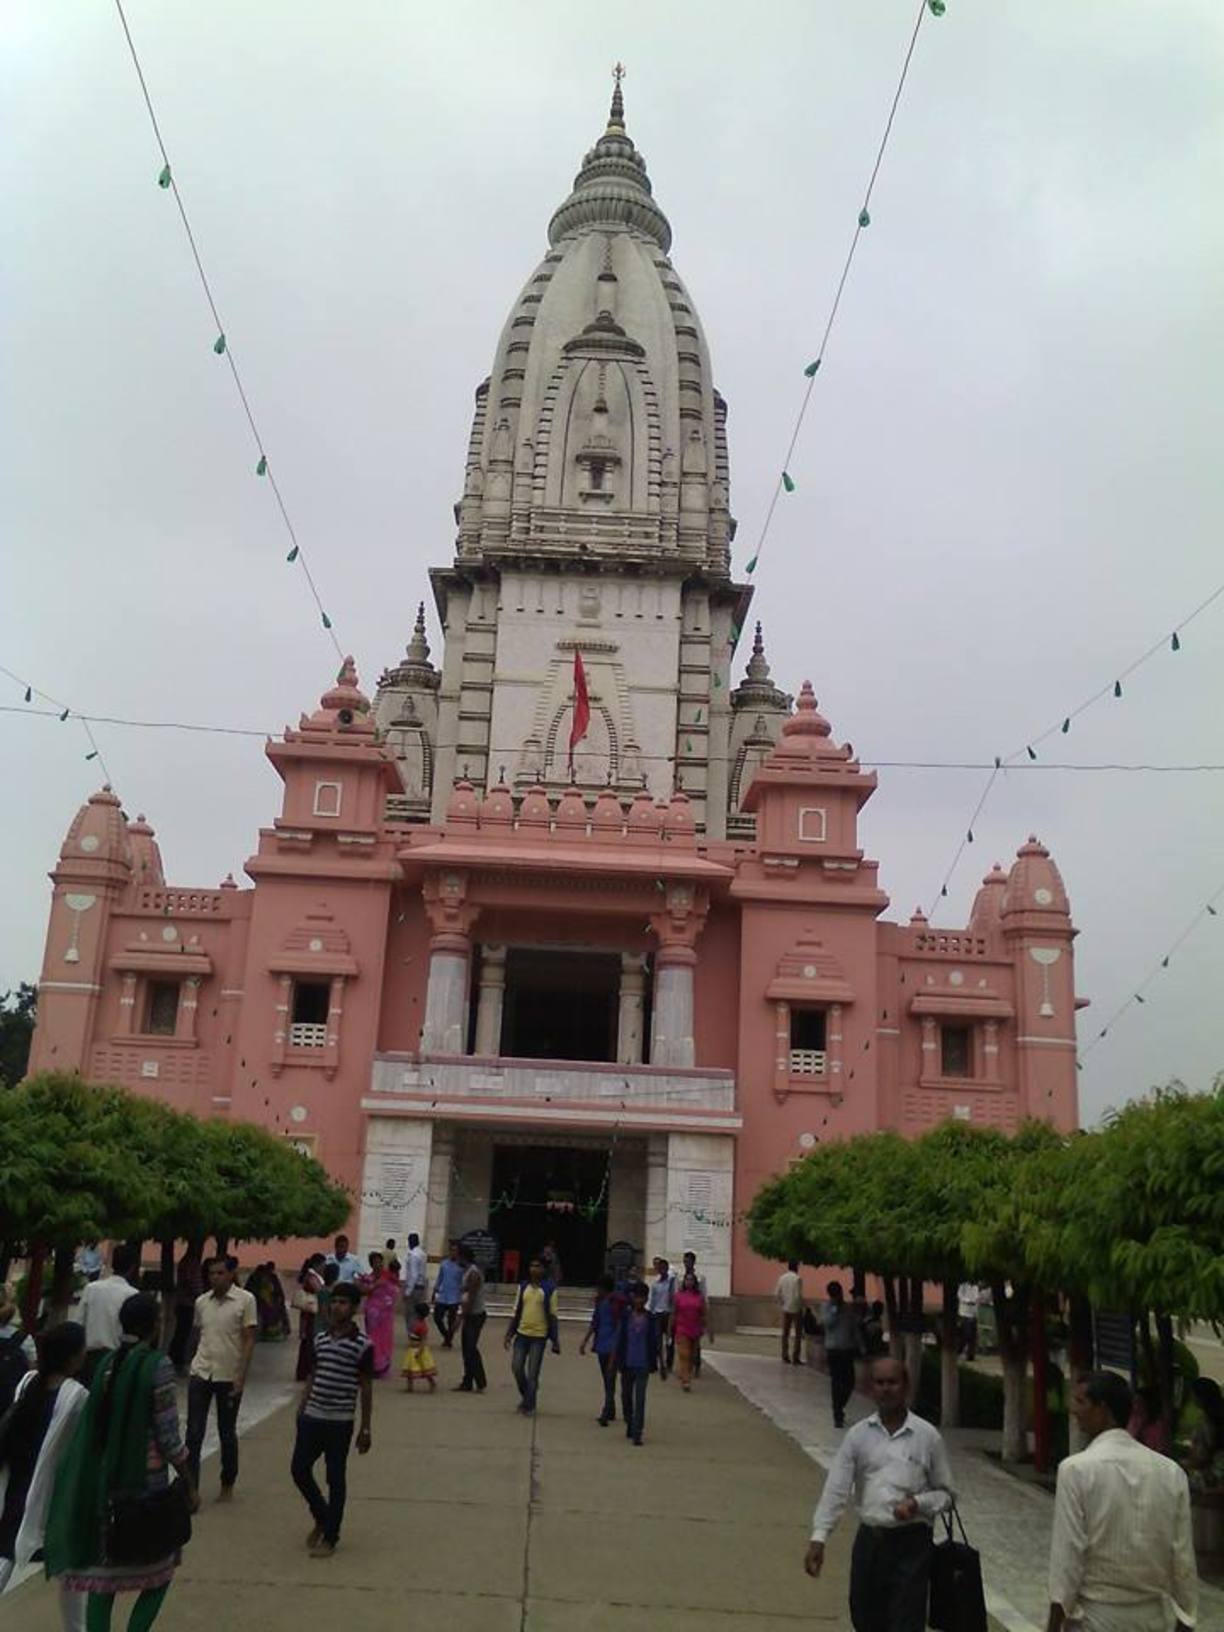 Shri Kashi Vishwanath Temple Entry Gate, Varanasi, India - Shree...